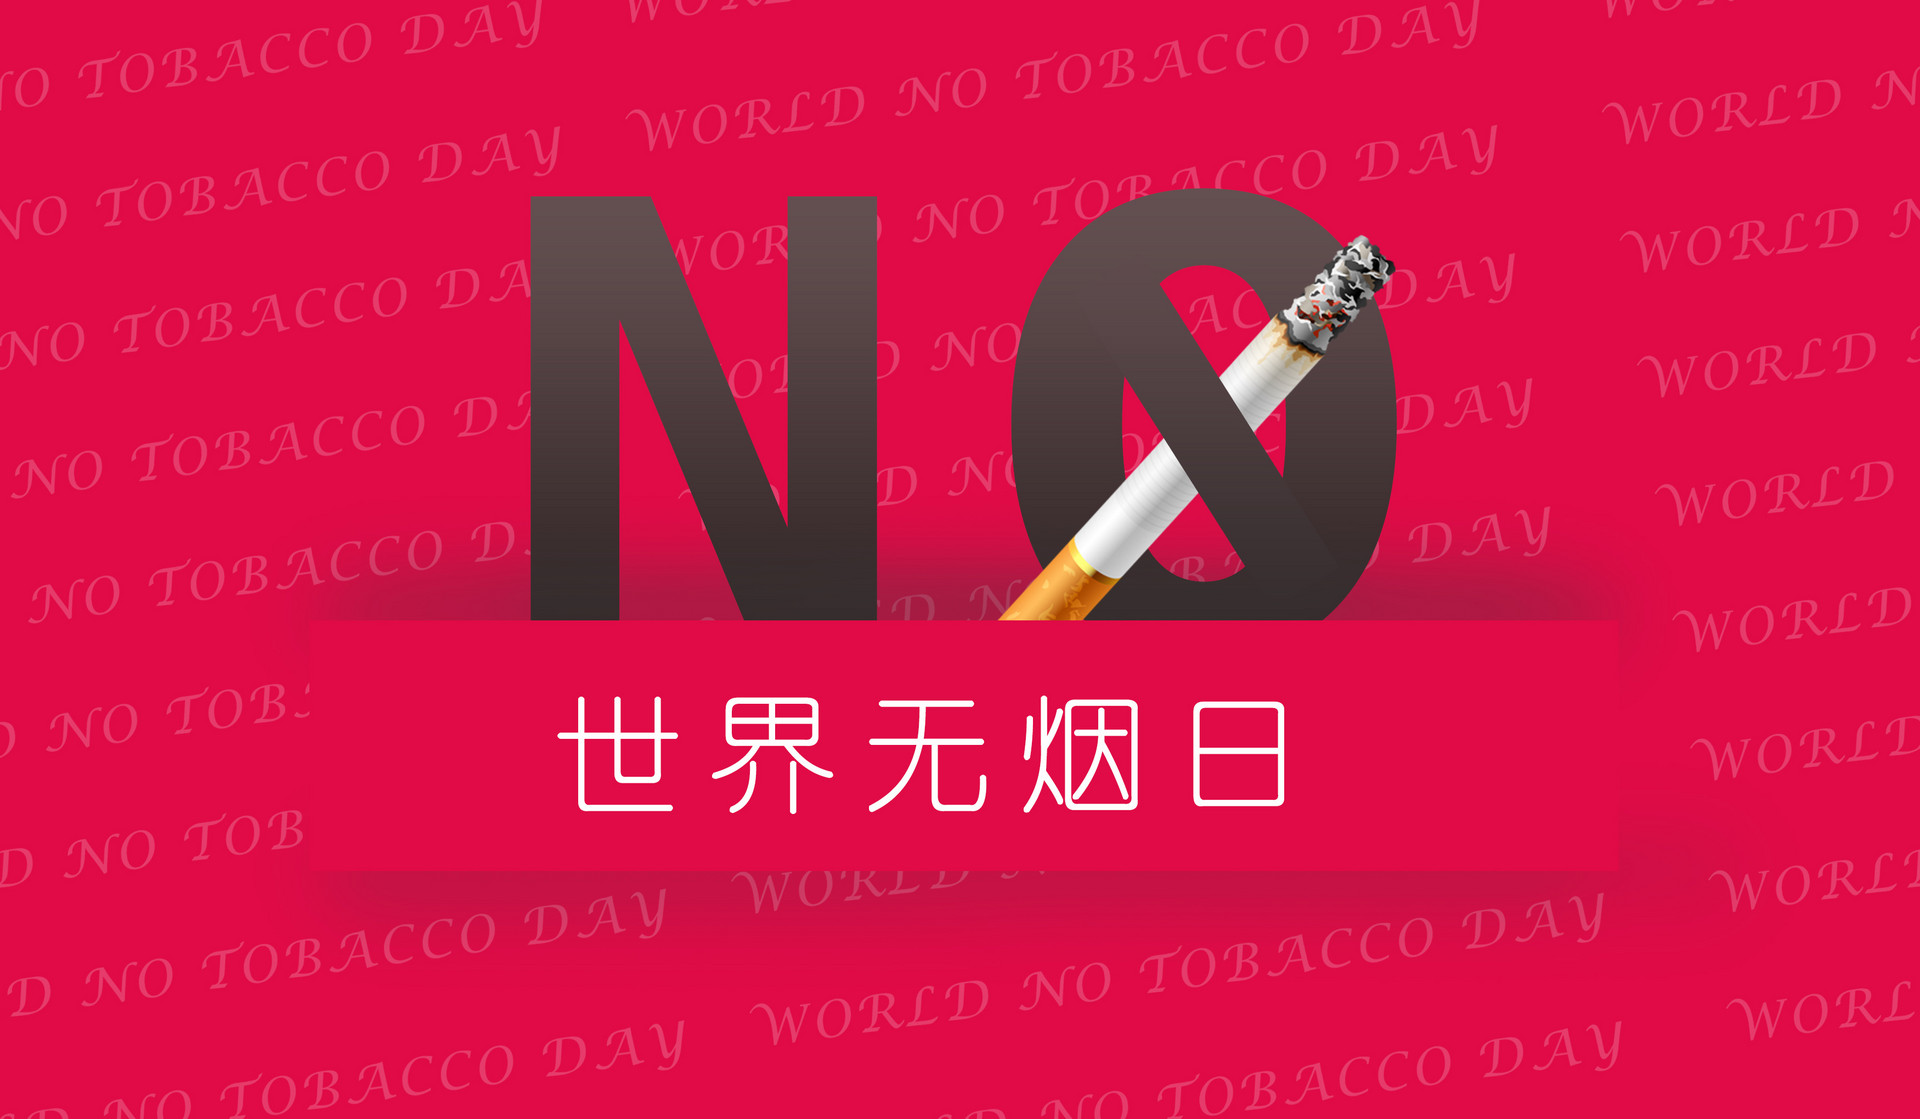 2020年世界无烟日是哪一天3